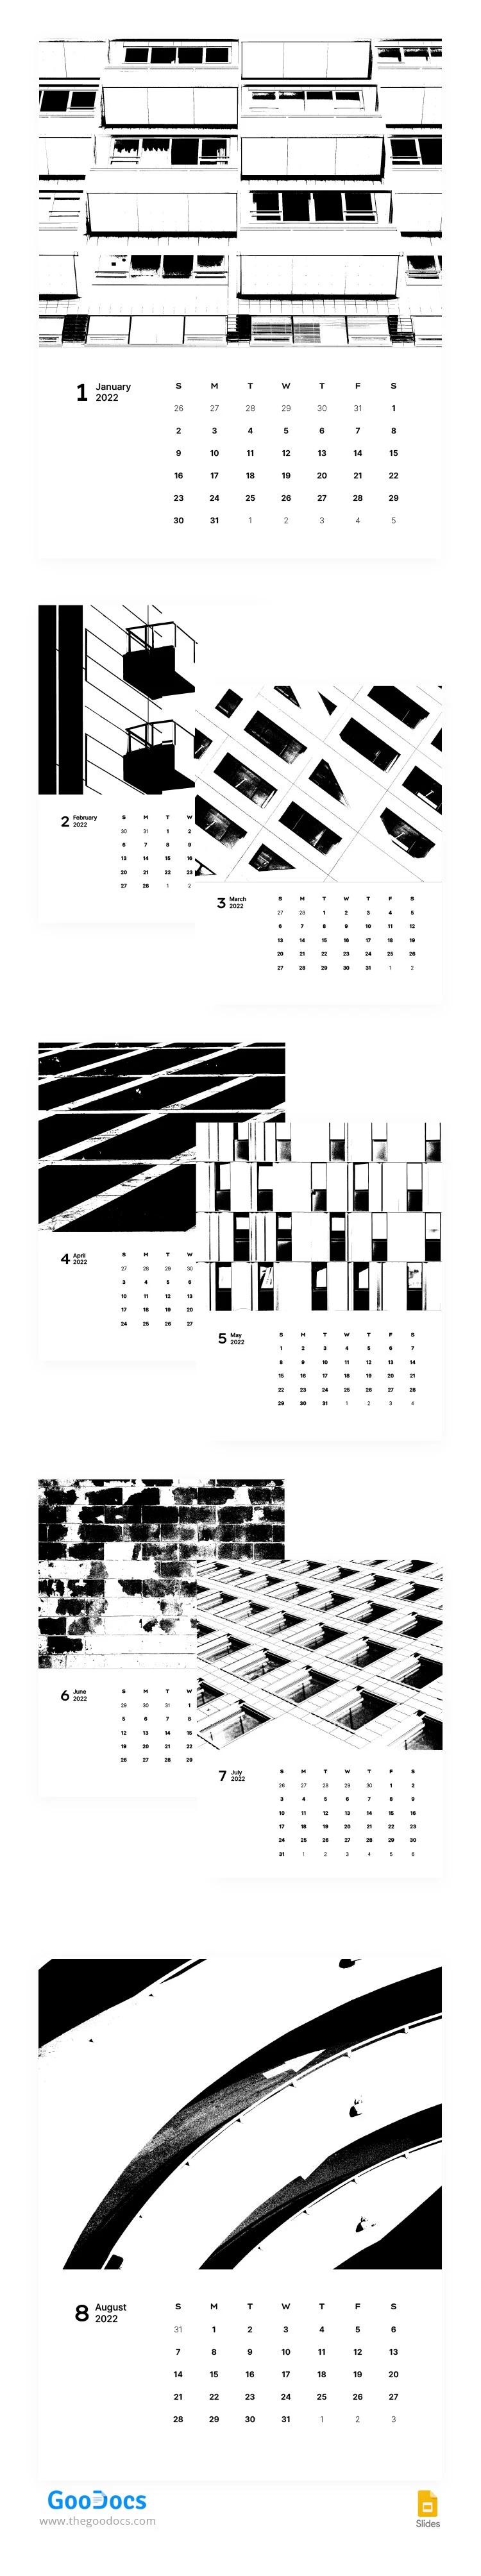 Calendario stilizzato in bianco e nero - free Google Docs Template - 10063075